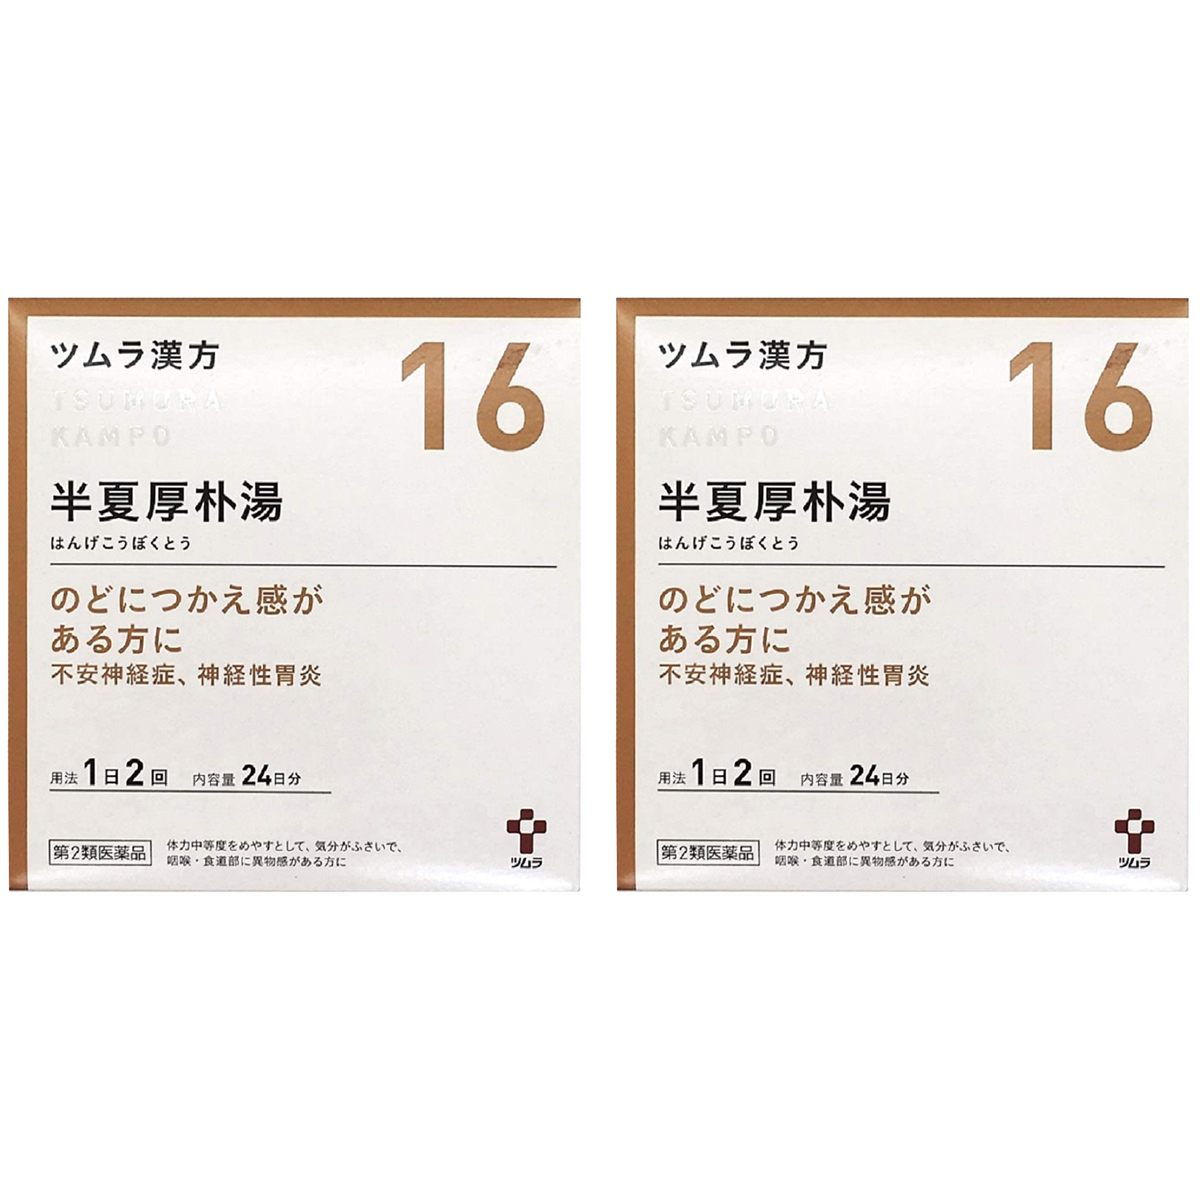 ツムラ ツムラ漢方 半夏厚朴湯エキス顆粒 48包×2個 ツムラ漢方 漢方薬の商品画像